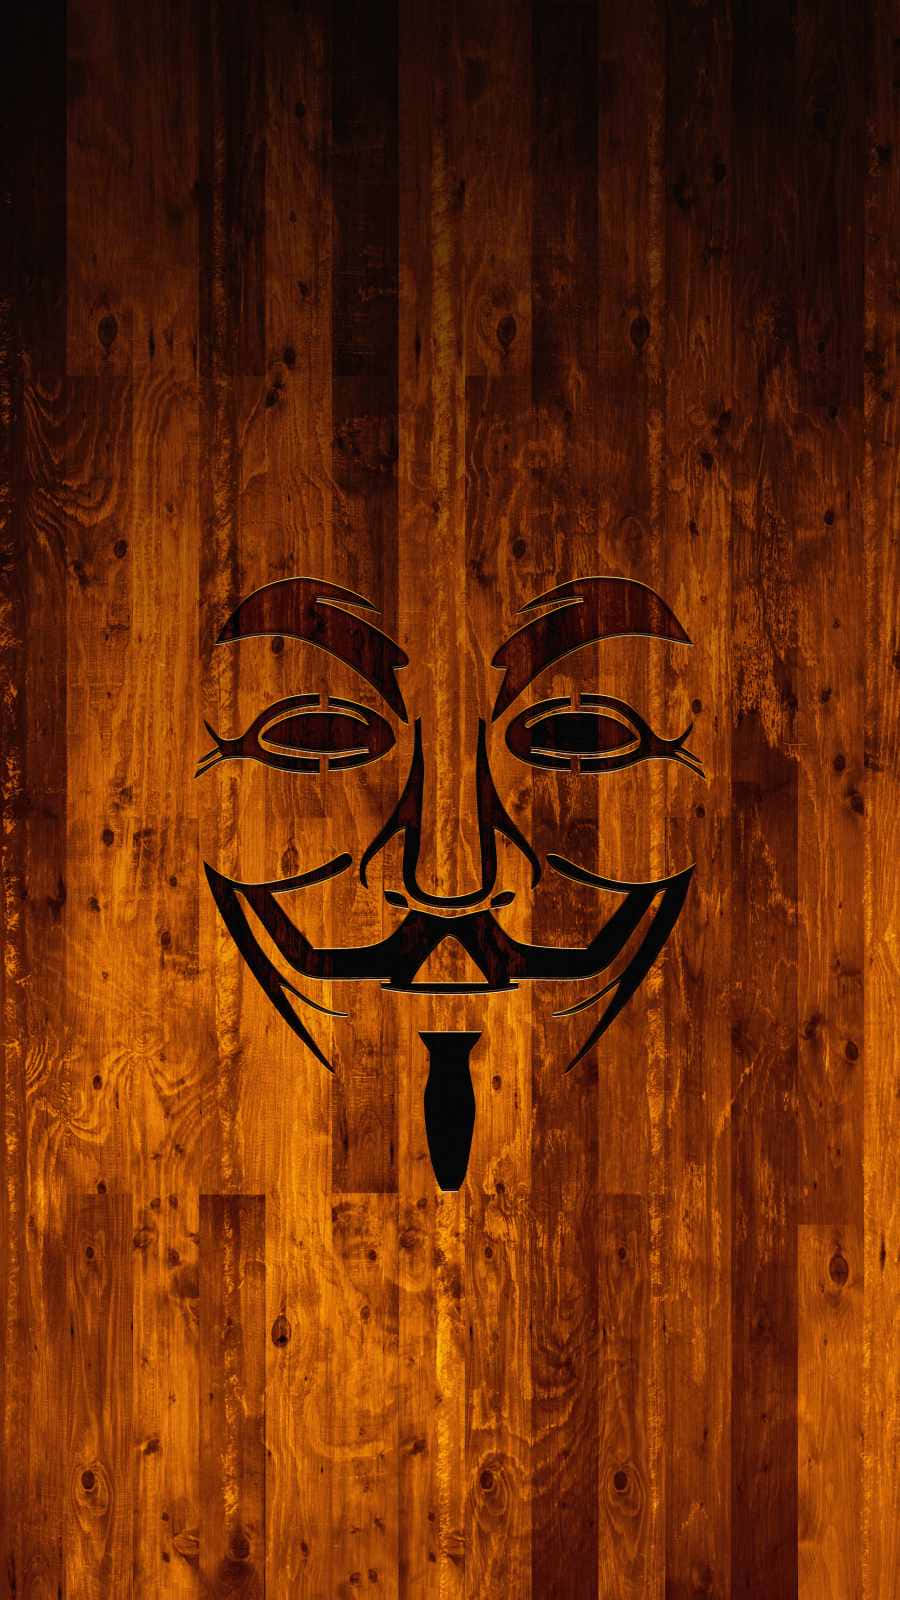 Umiphone De Alta Tecnologia E Criptografado Da Organização Anonymous. Papel de Parede